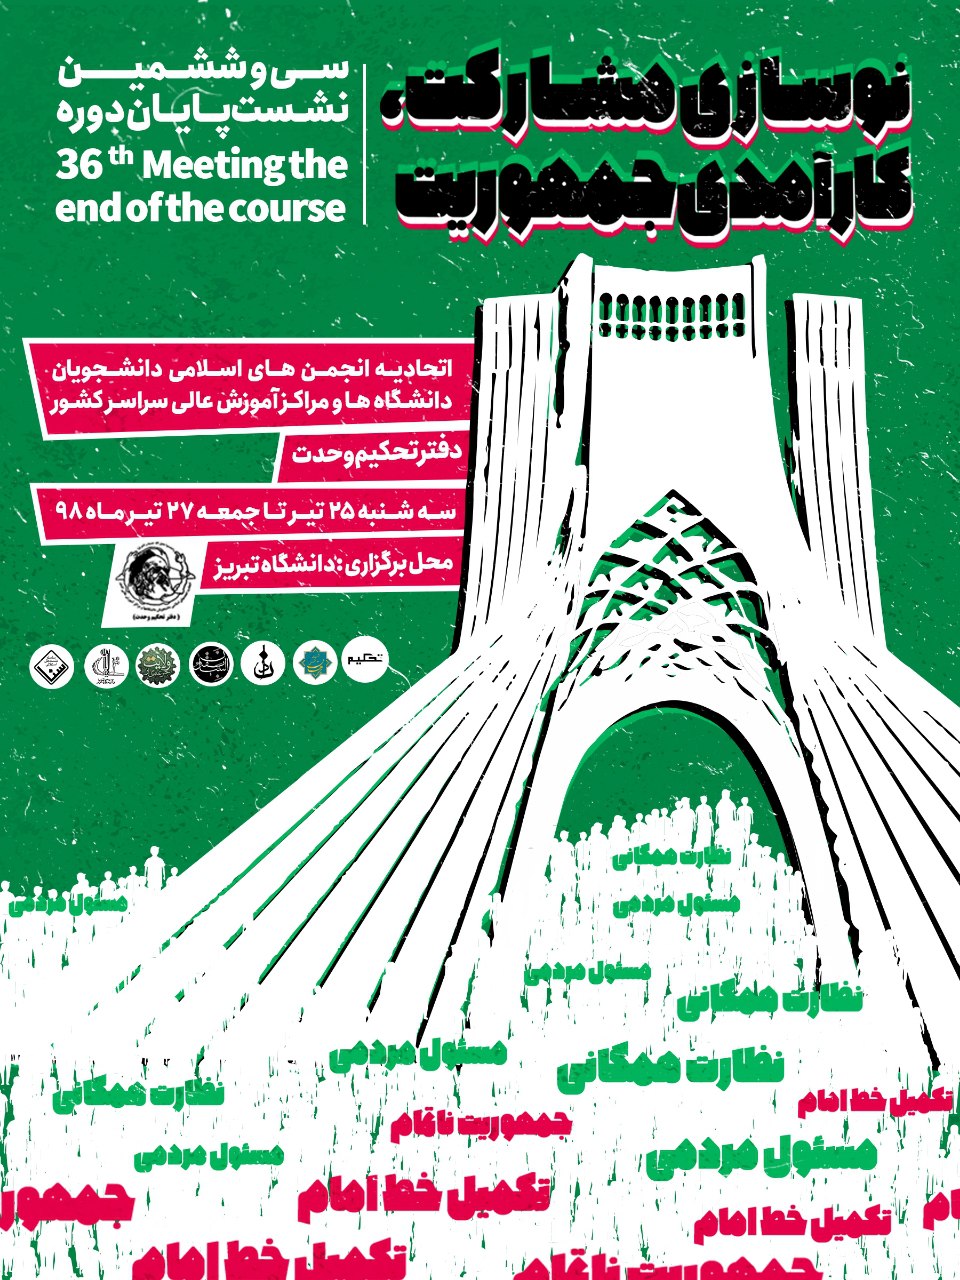 سی و ششمین نشست پایان دوره اتحادیه دفتر تحکیم وحدت 25 تیر در دانشگاه تبریز برگزار می‌شود